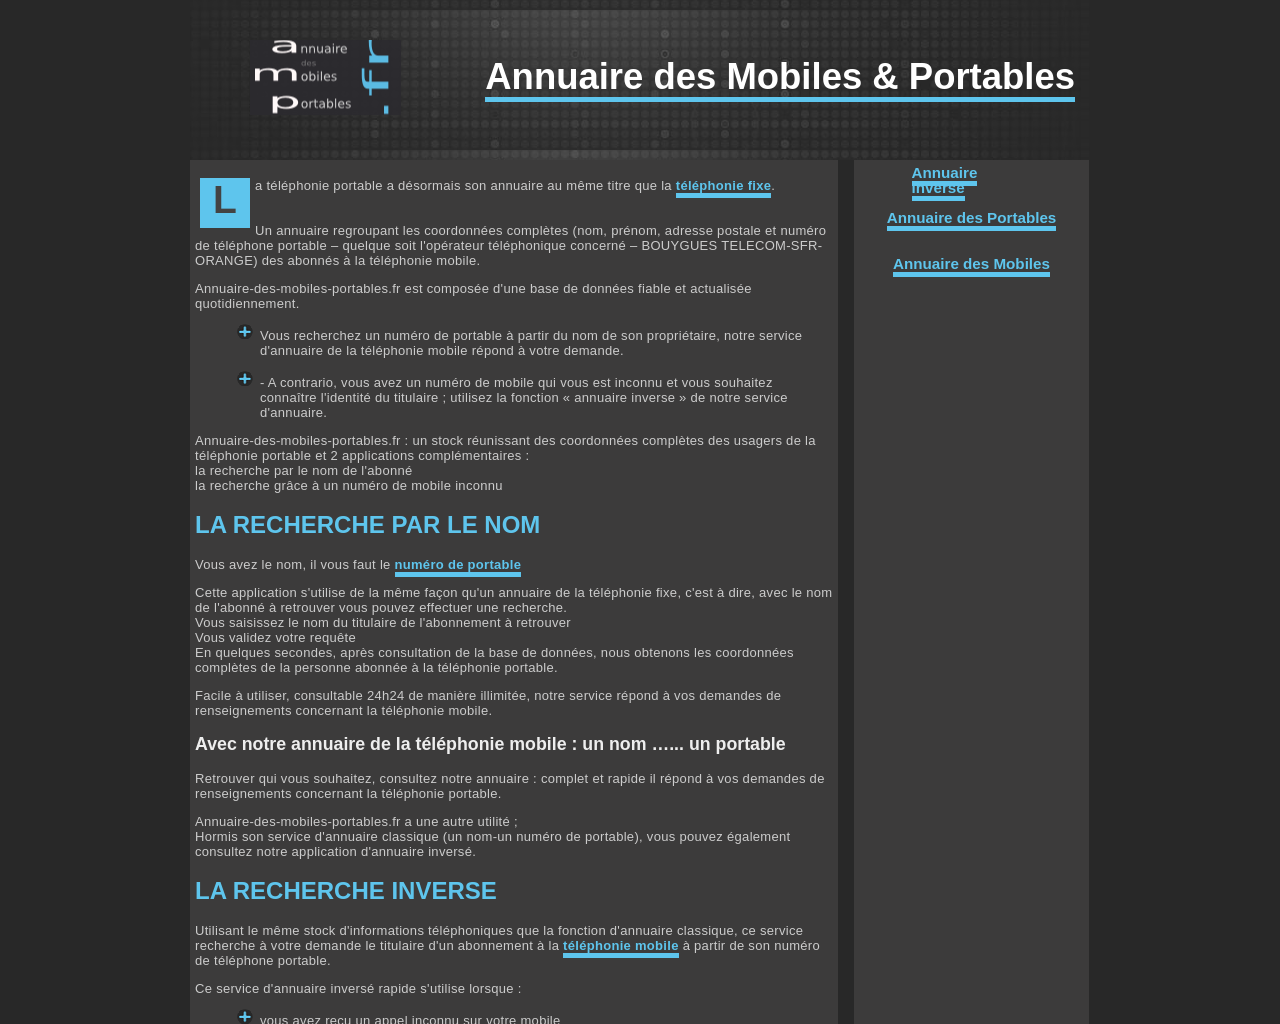 www.annuaire-des-mobiles-portables.fr